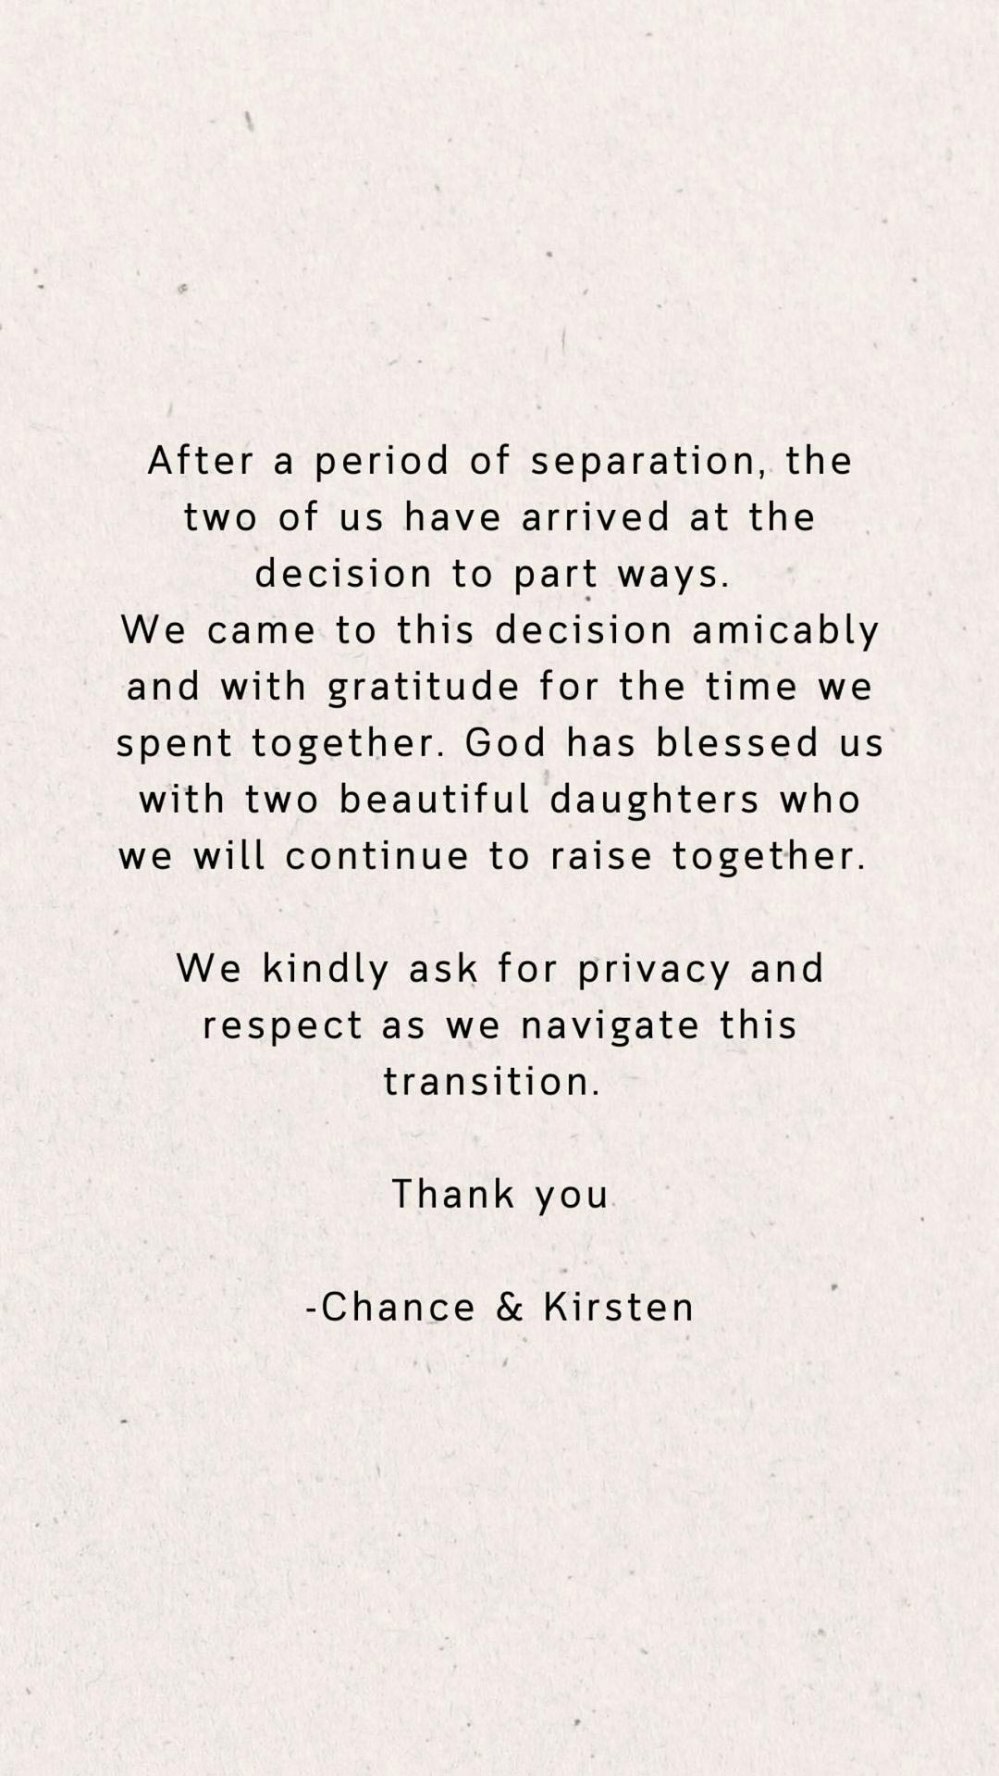 Chance de que o rapper e sua esposa Kirsten Corely estejam se divorciando após um período de separação 067